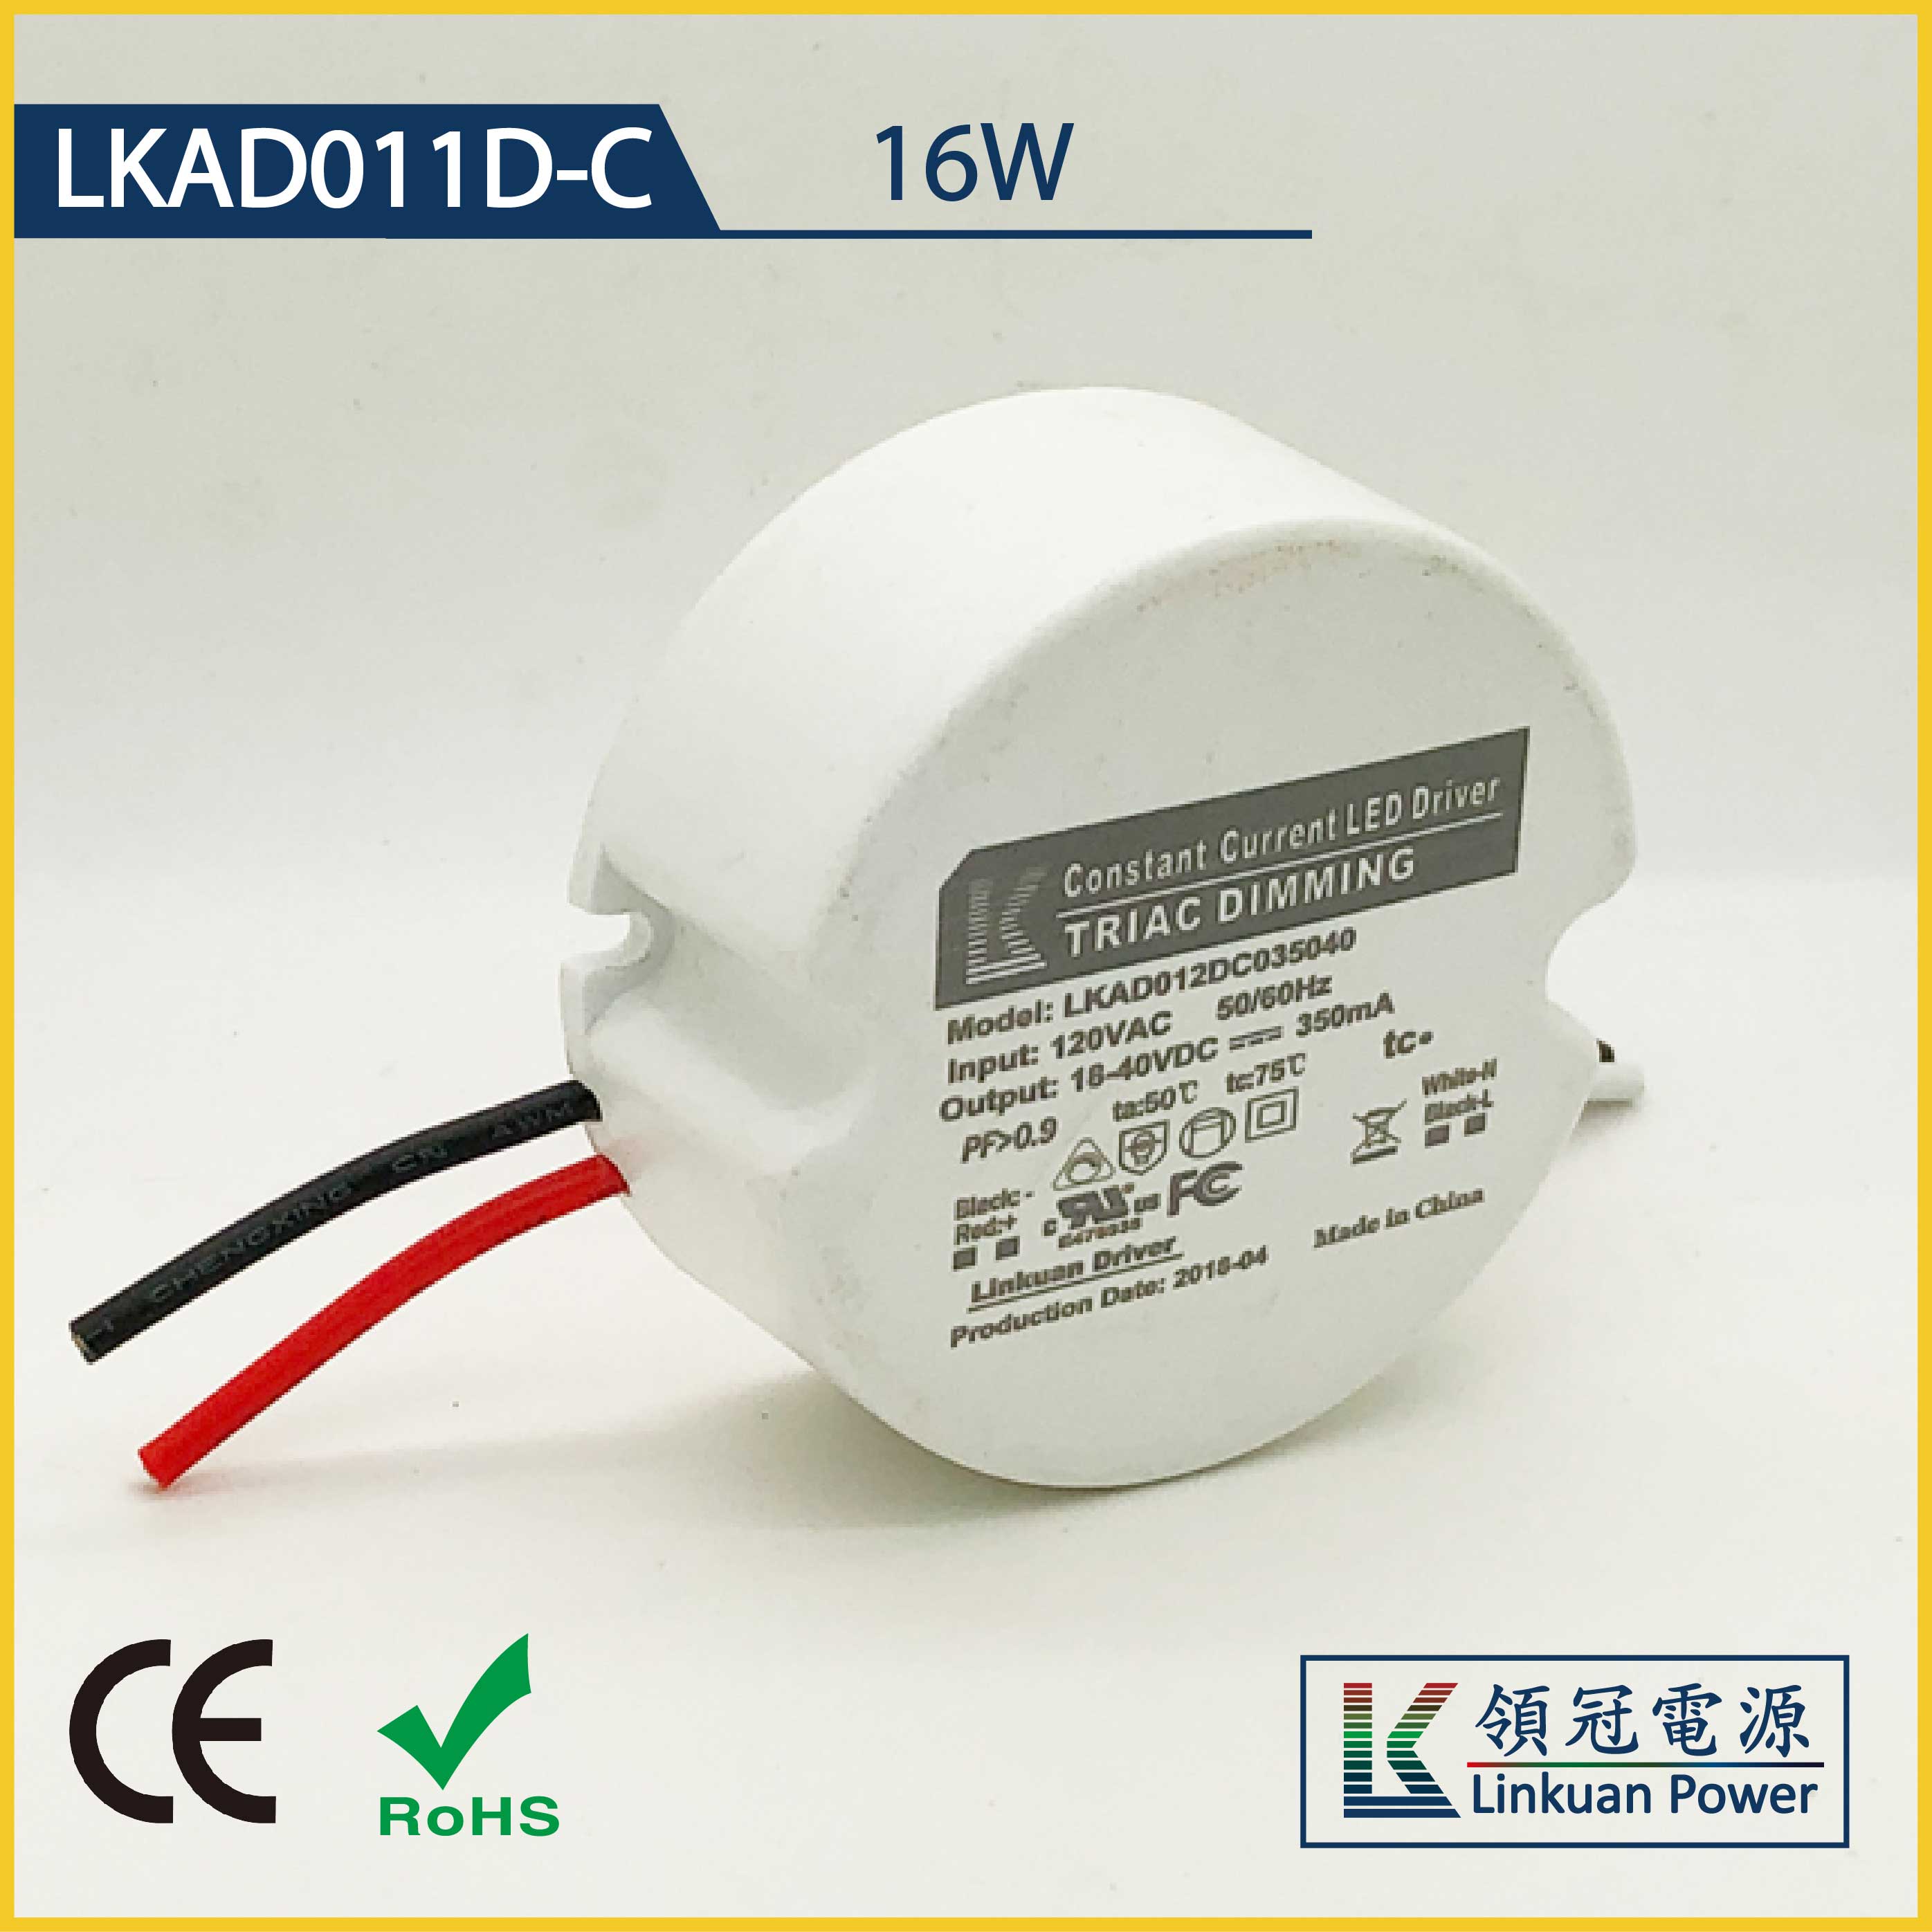 LKAD011D-C 16W 5-42V 400mA 0-10V Dimming LED drivers